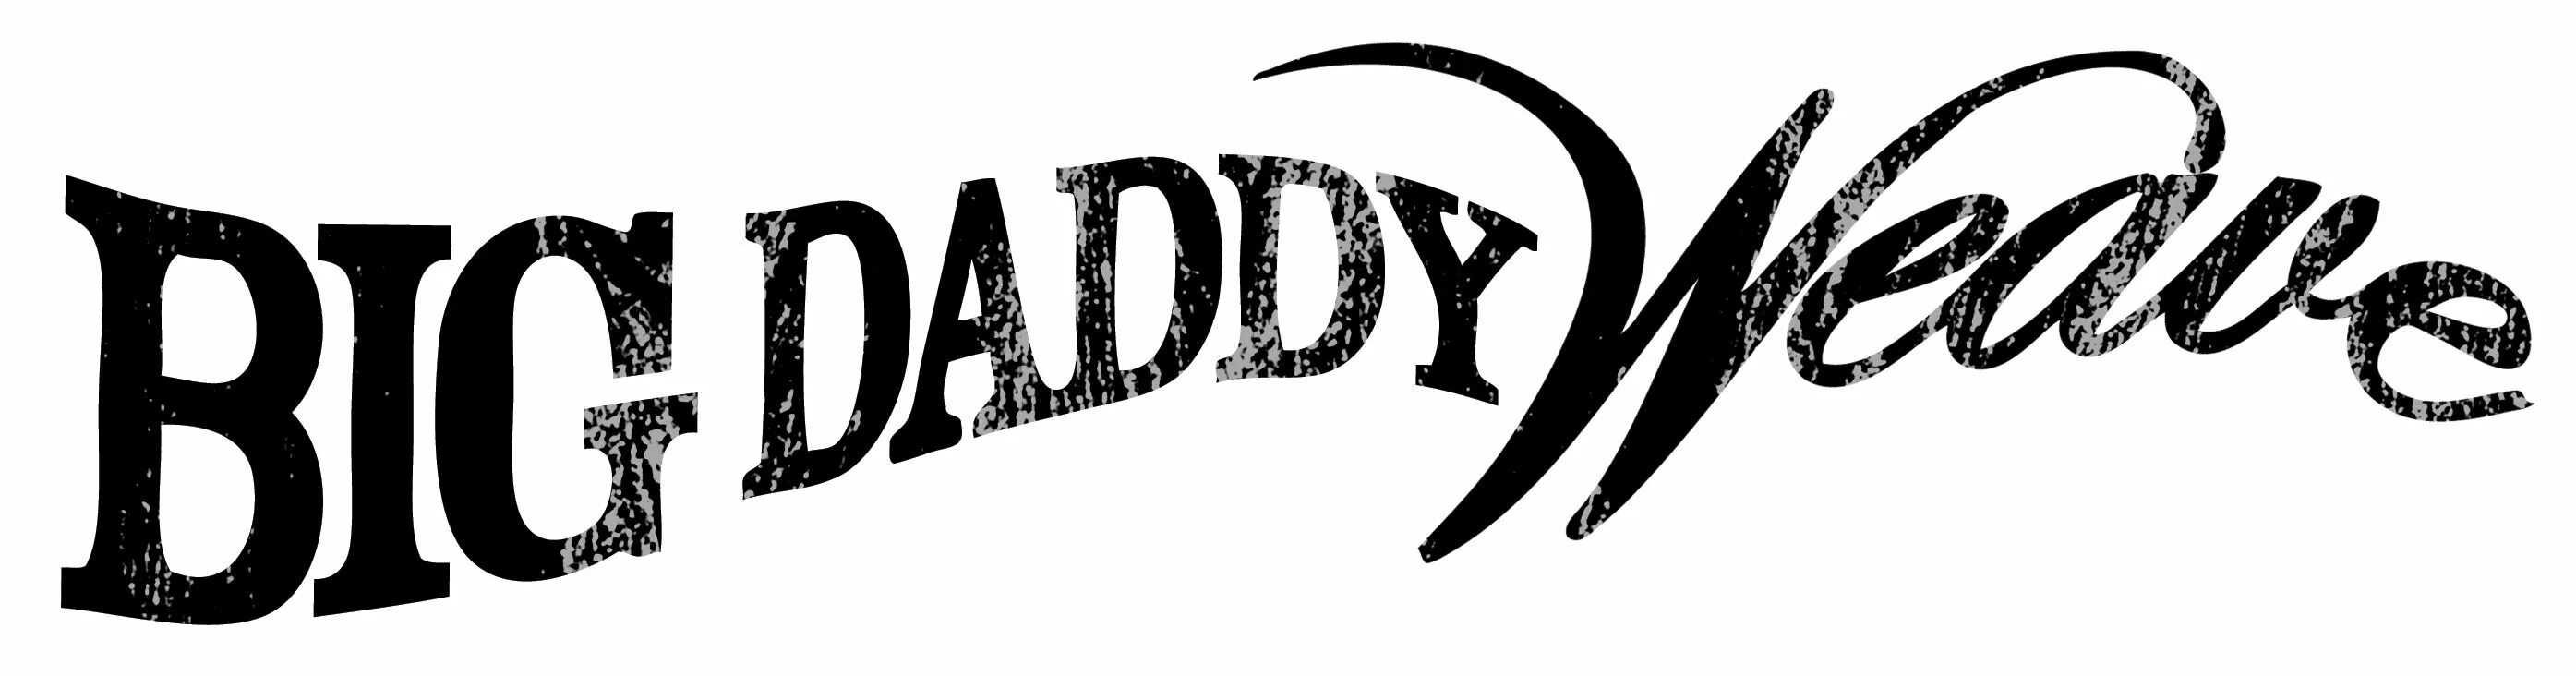 Логотип Биг Дэдди. Большой папа лого. Велик логотип. Надписи эмблемы big Daddy.